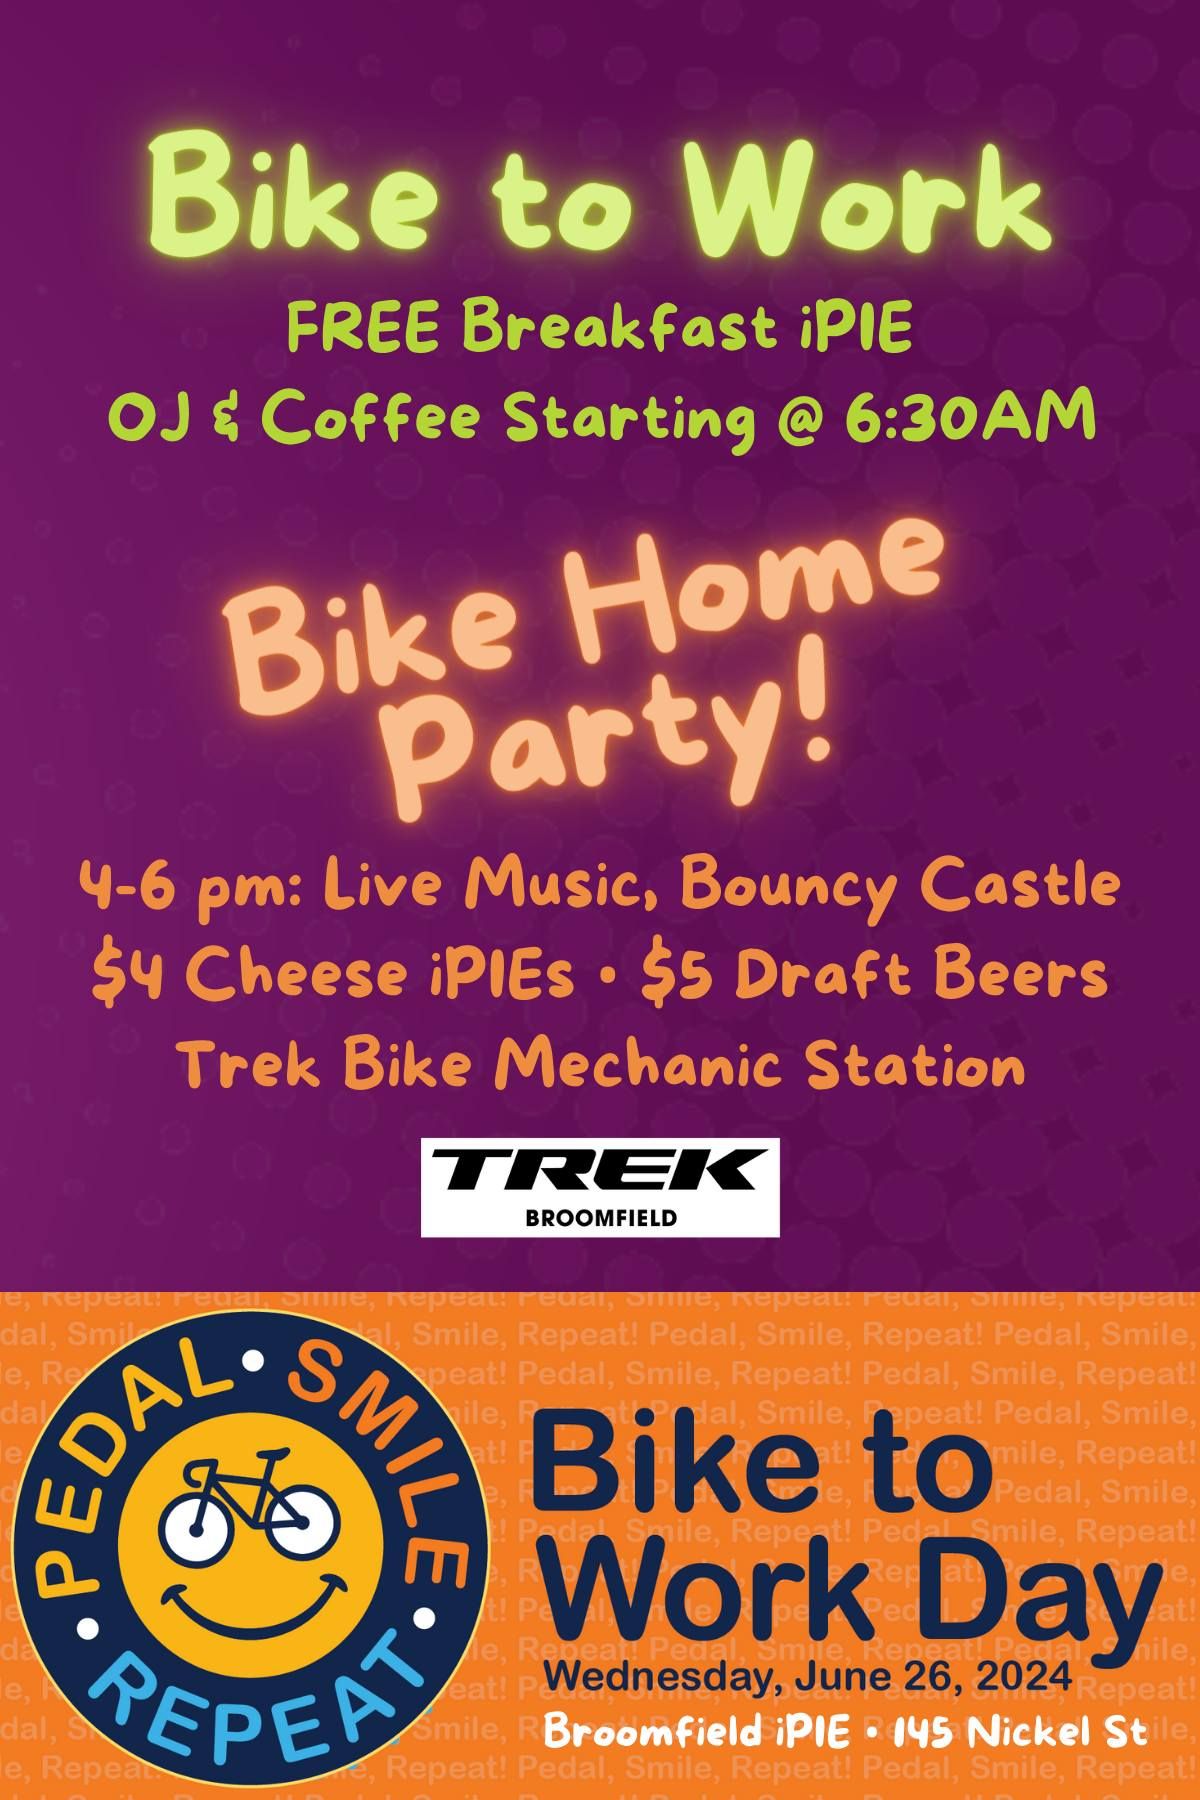 Bike to Work Free Breakfast & Bike Home Party